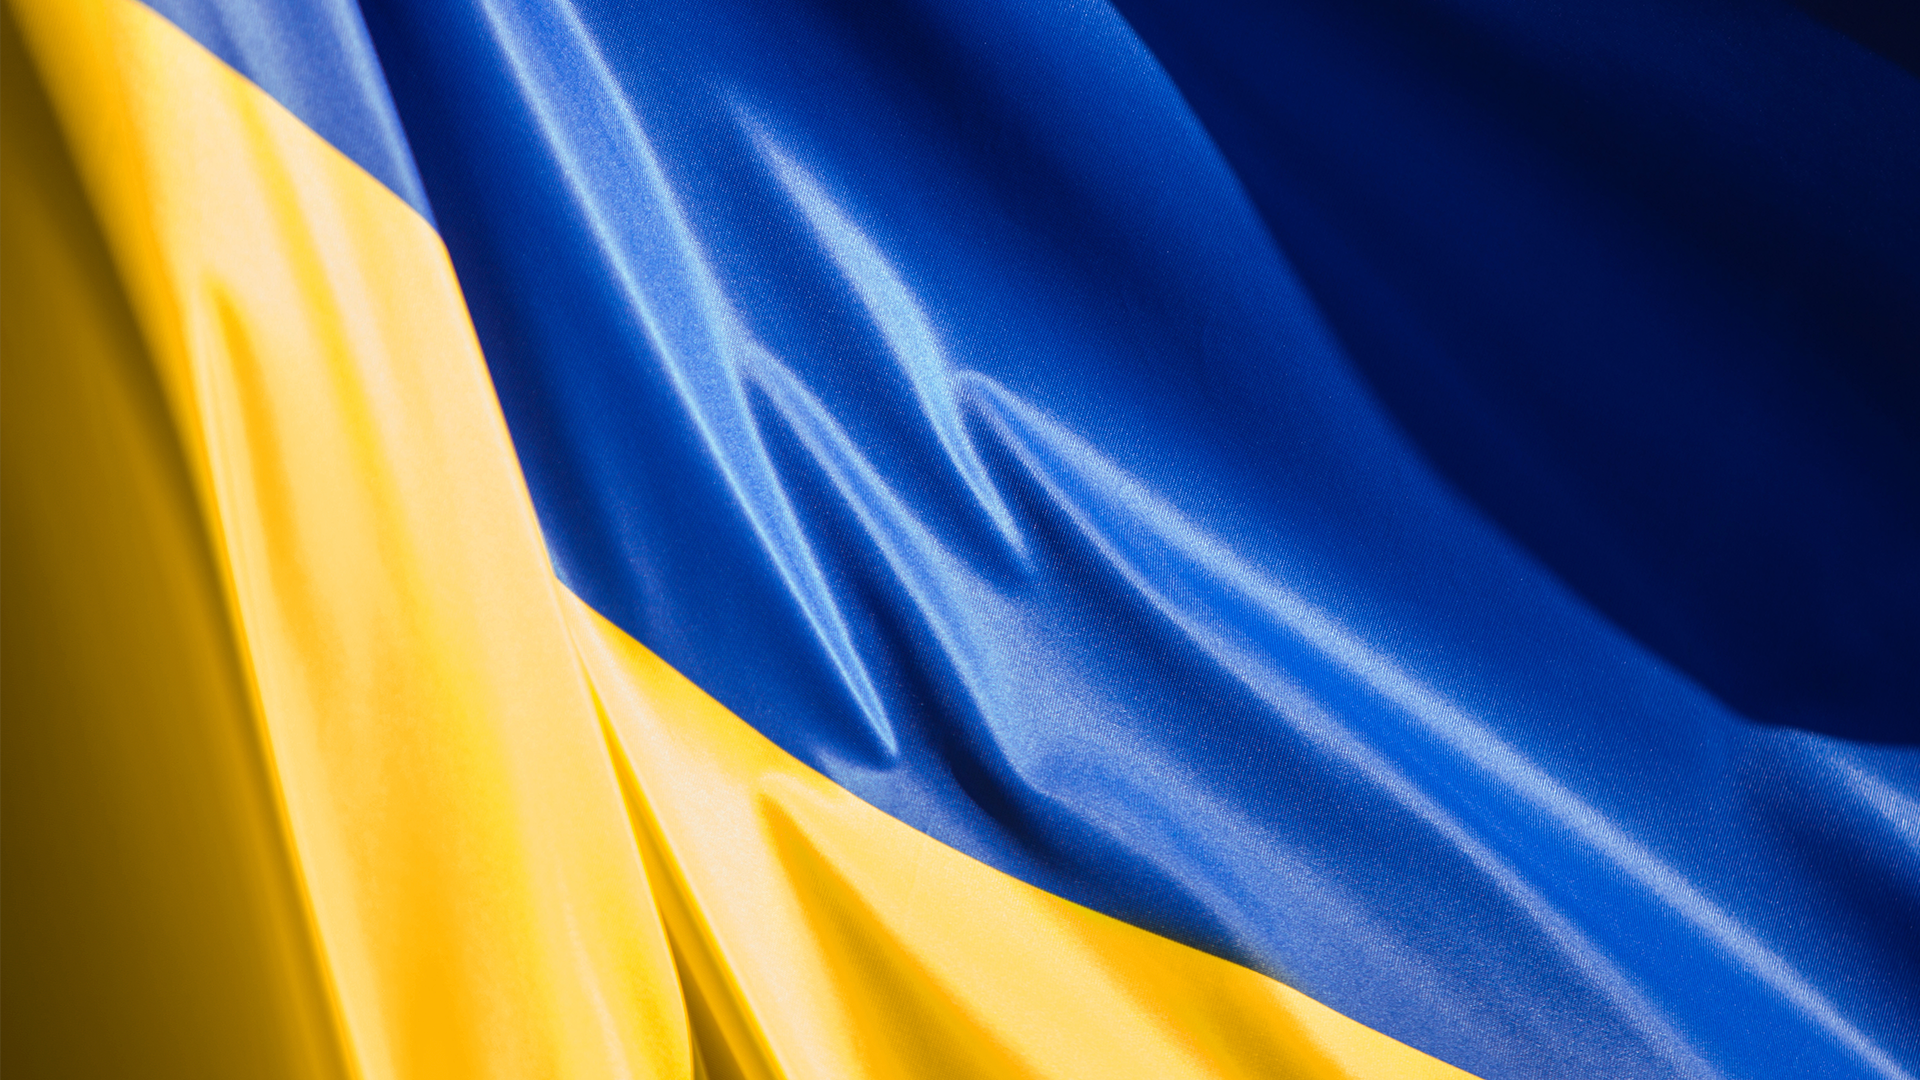 З Днем Державного Прапора України!